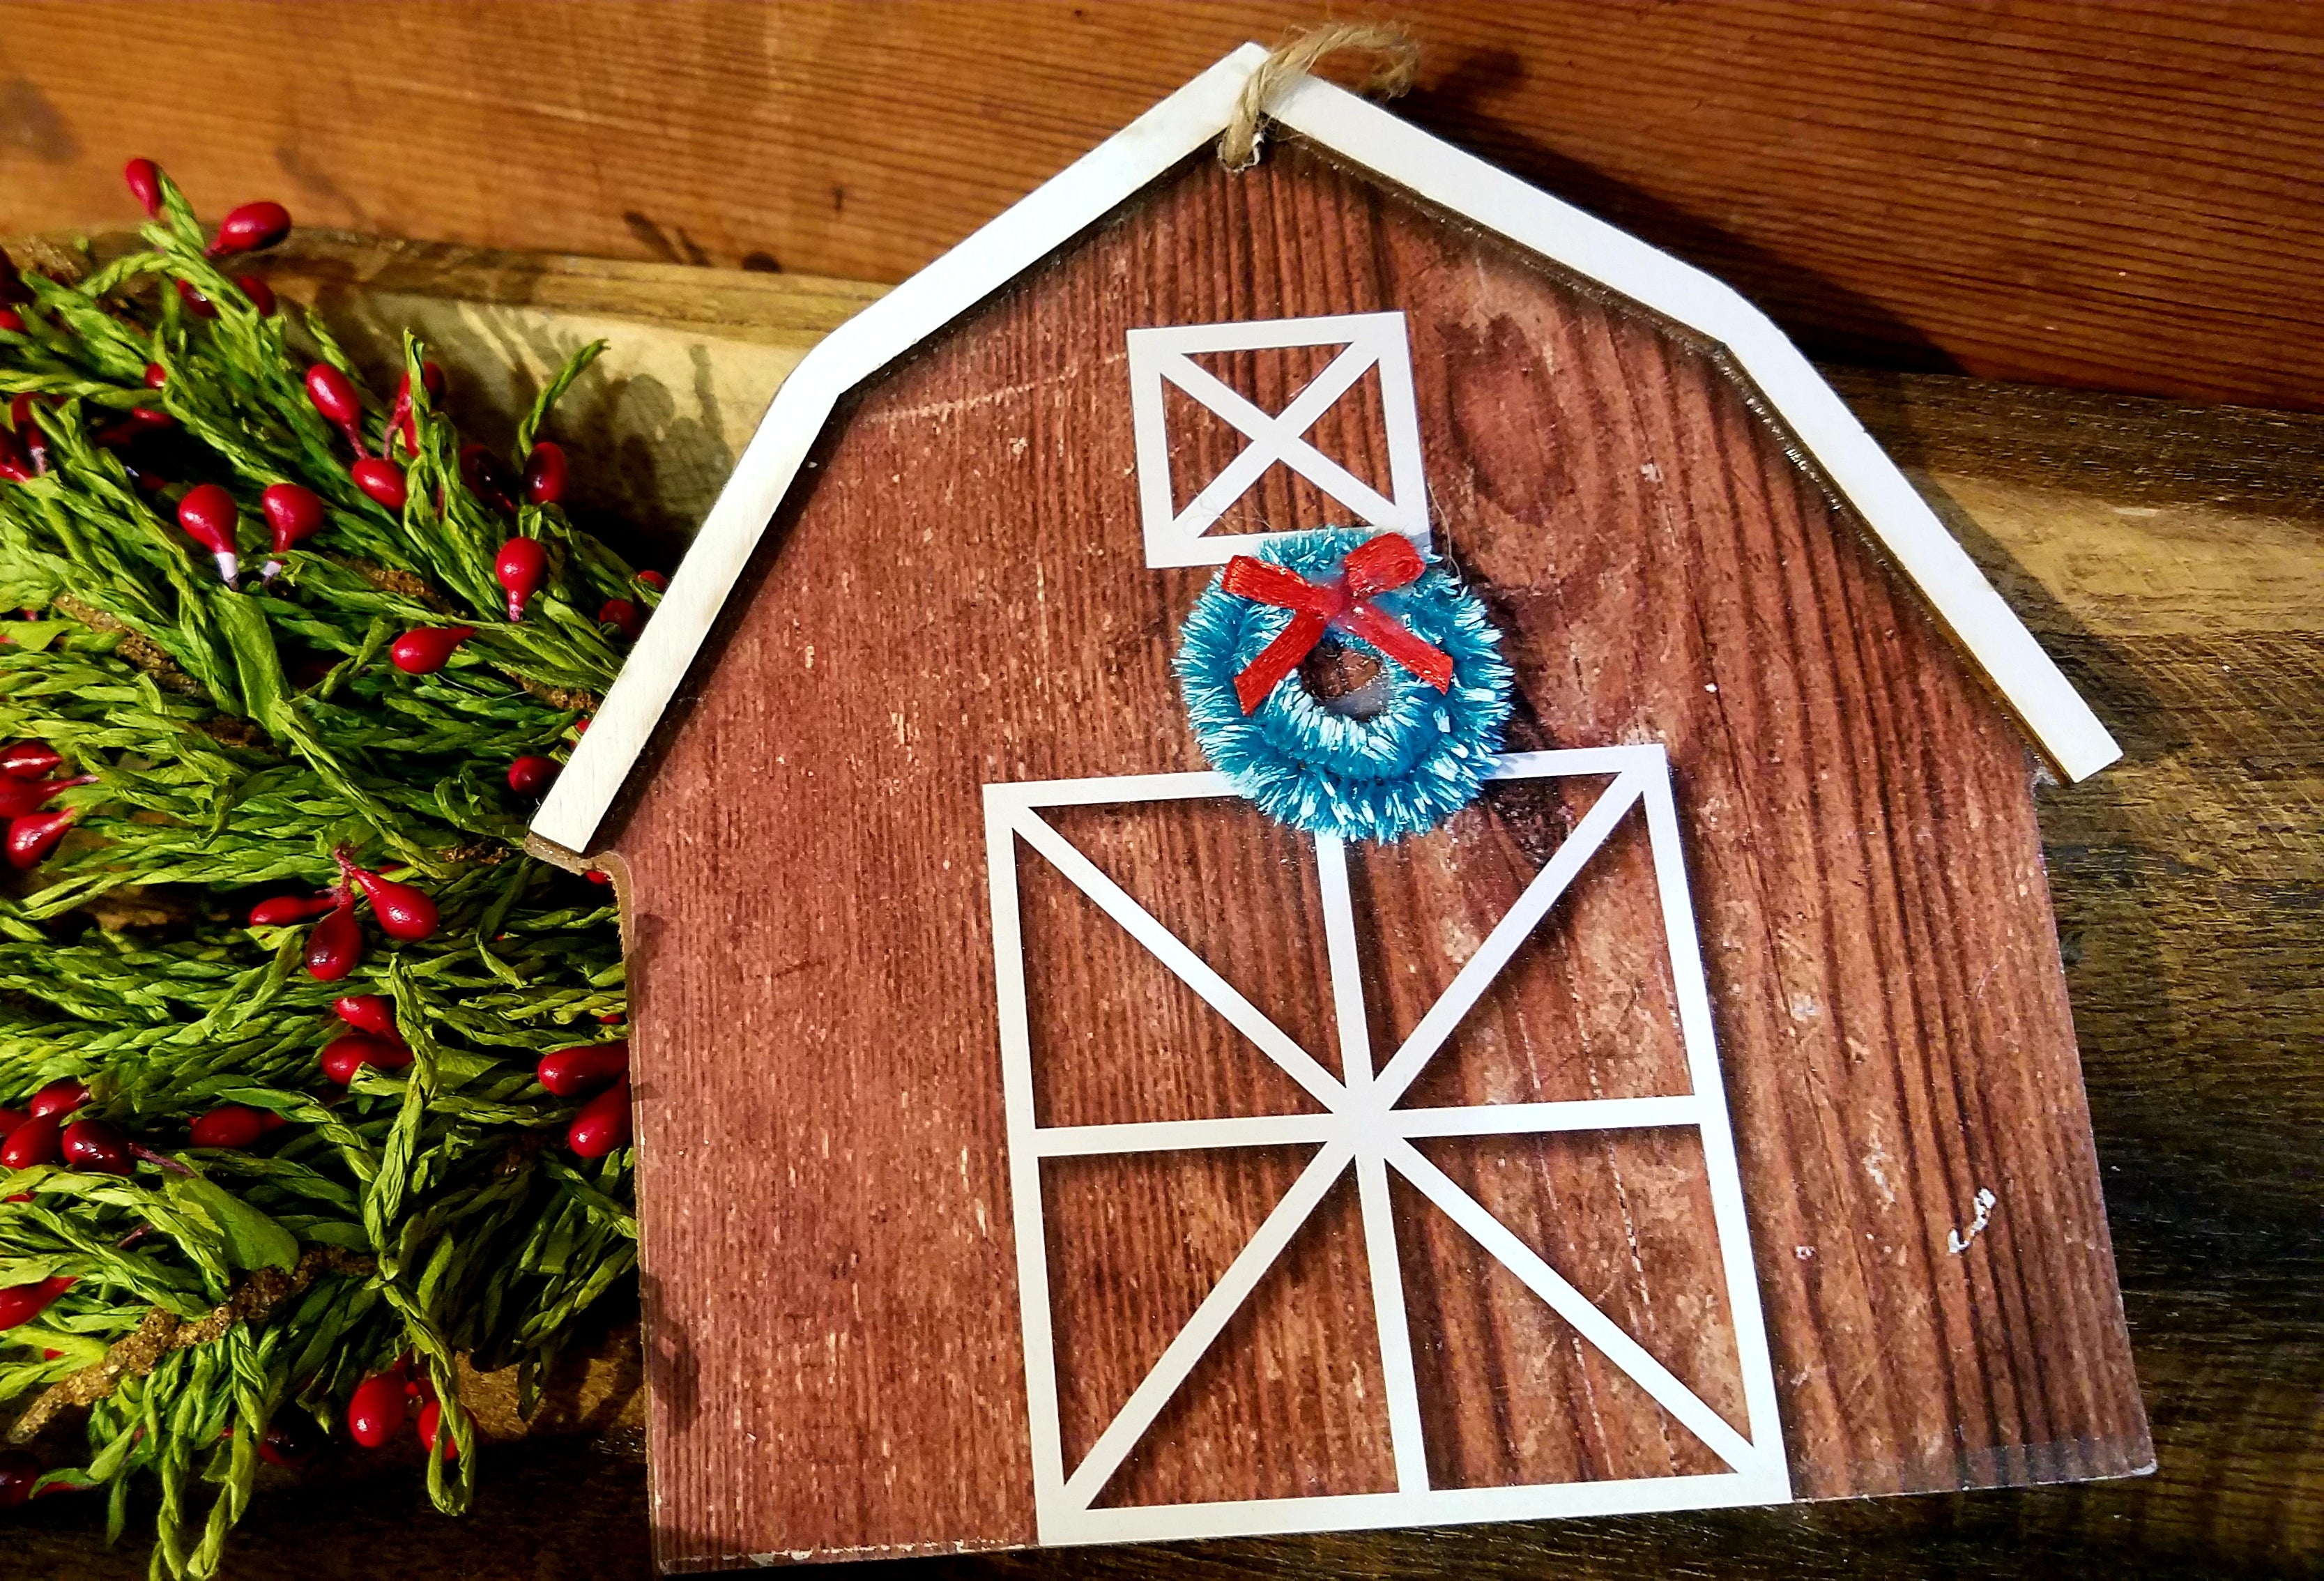 Farmhouse Barn Christmas Ornament